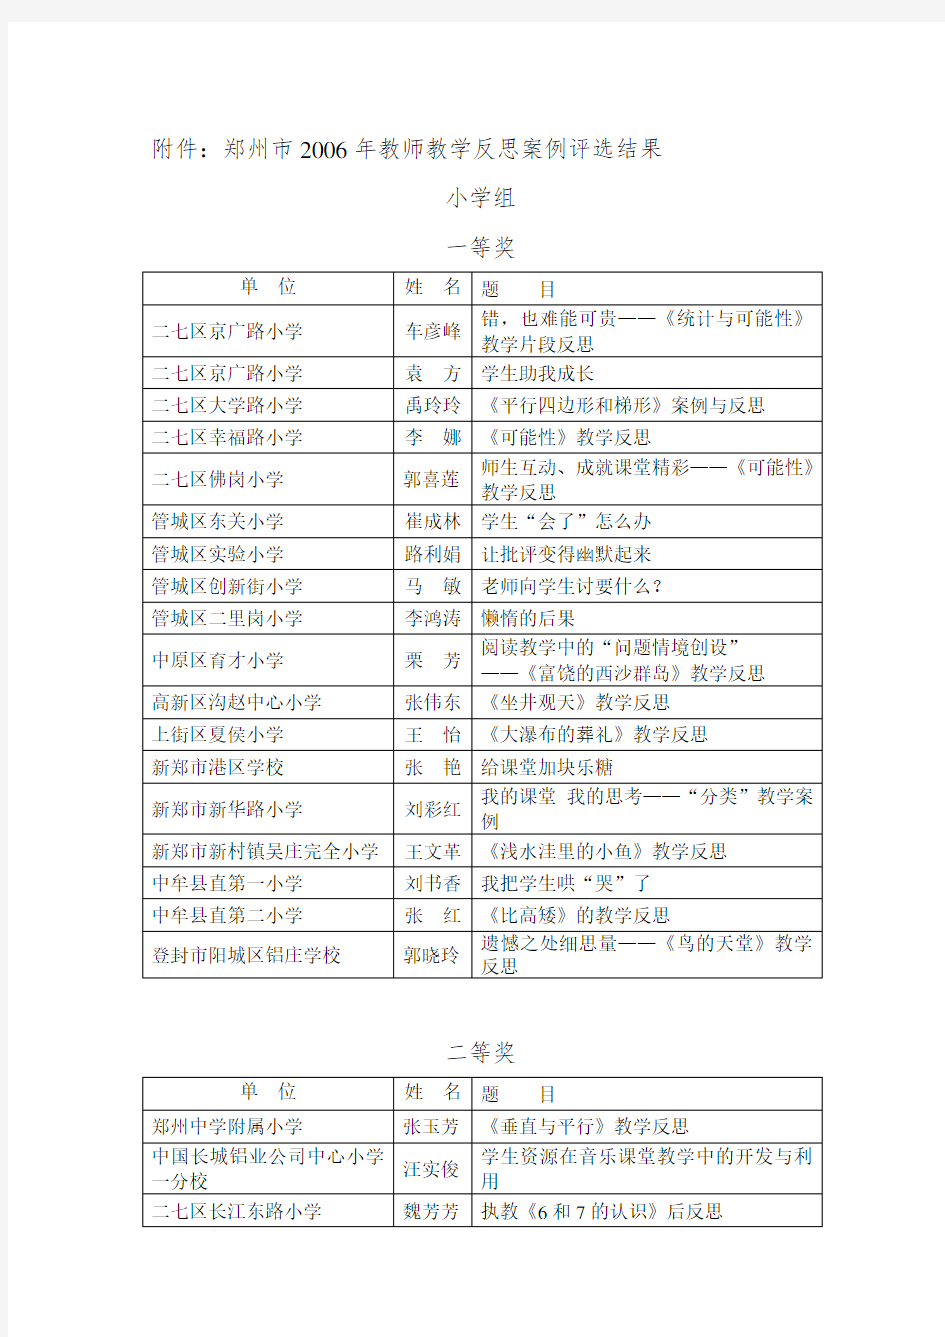 公布郑州市教师教学反思案例评选结果的